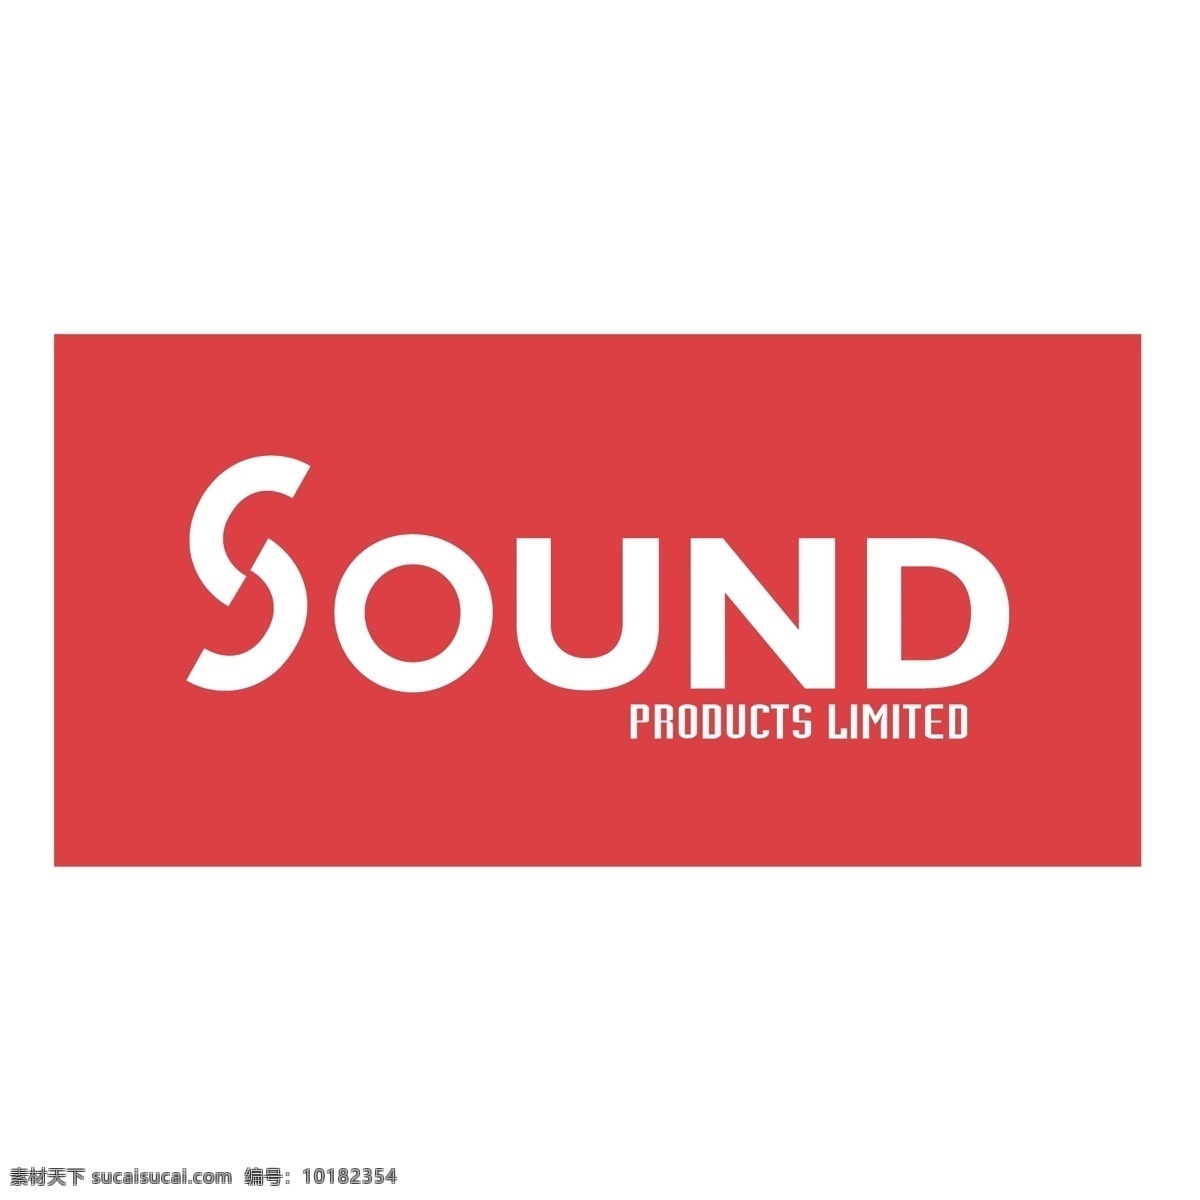 音响产品 产品 声音 矢量图形 的声音 声音的产品 产品的声矢量 矢量 声技 术 良好 技术产品 向量的声音 声矢量 自由 载体 无声 音 图像 建筑家居